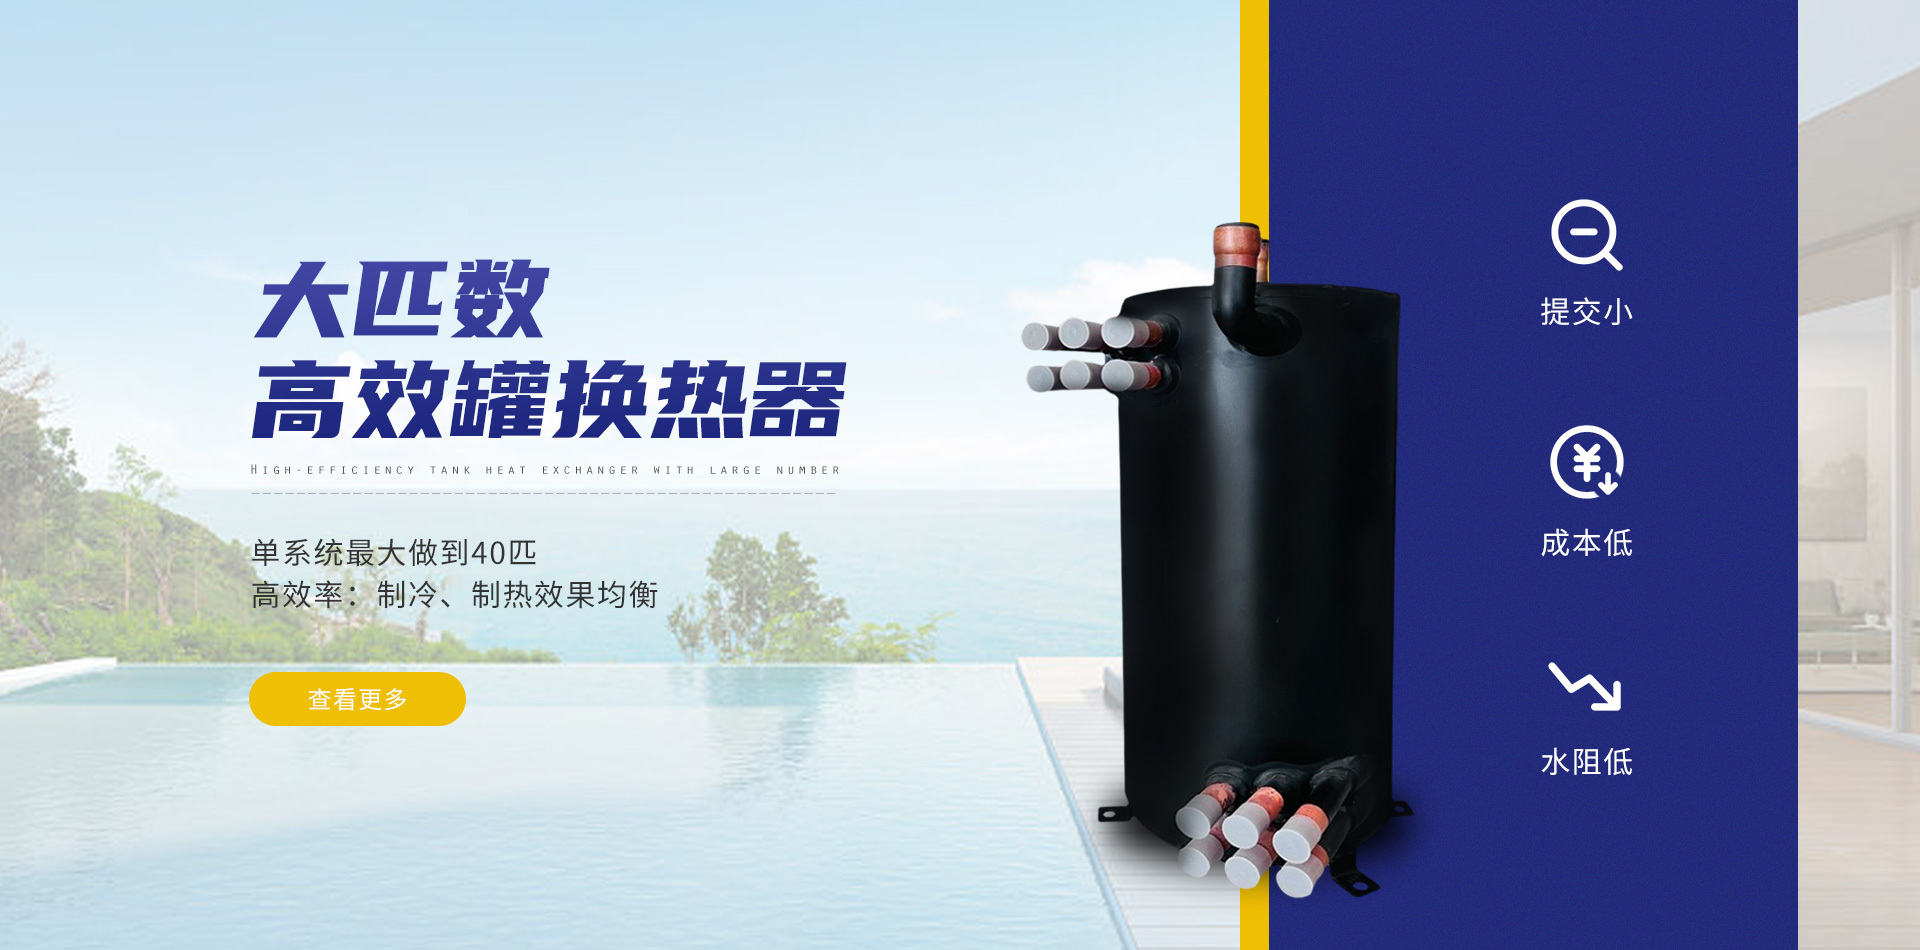 板式钛管换热器：高效换热，助力绿色能源发展